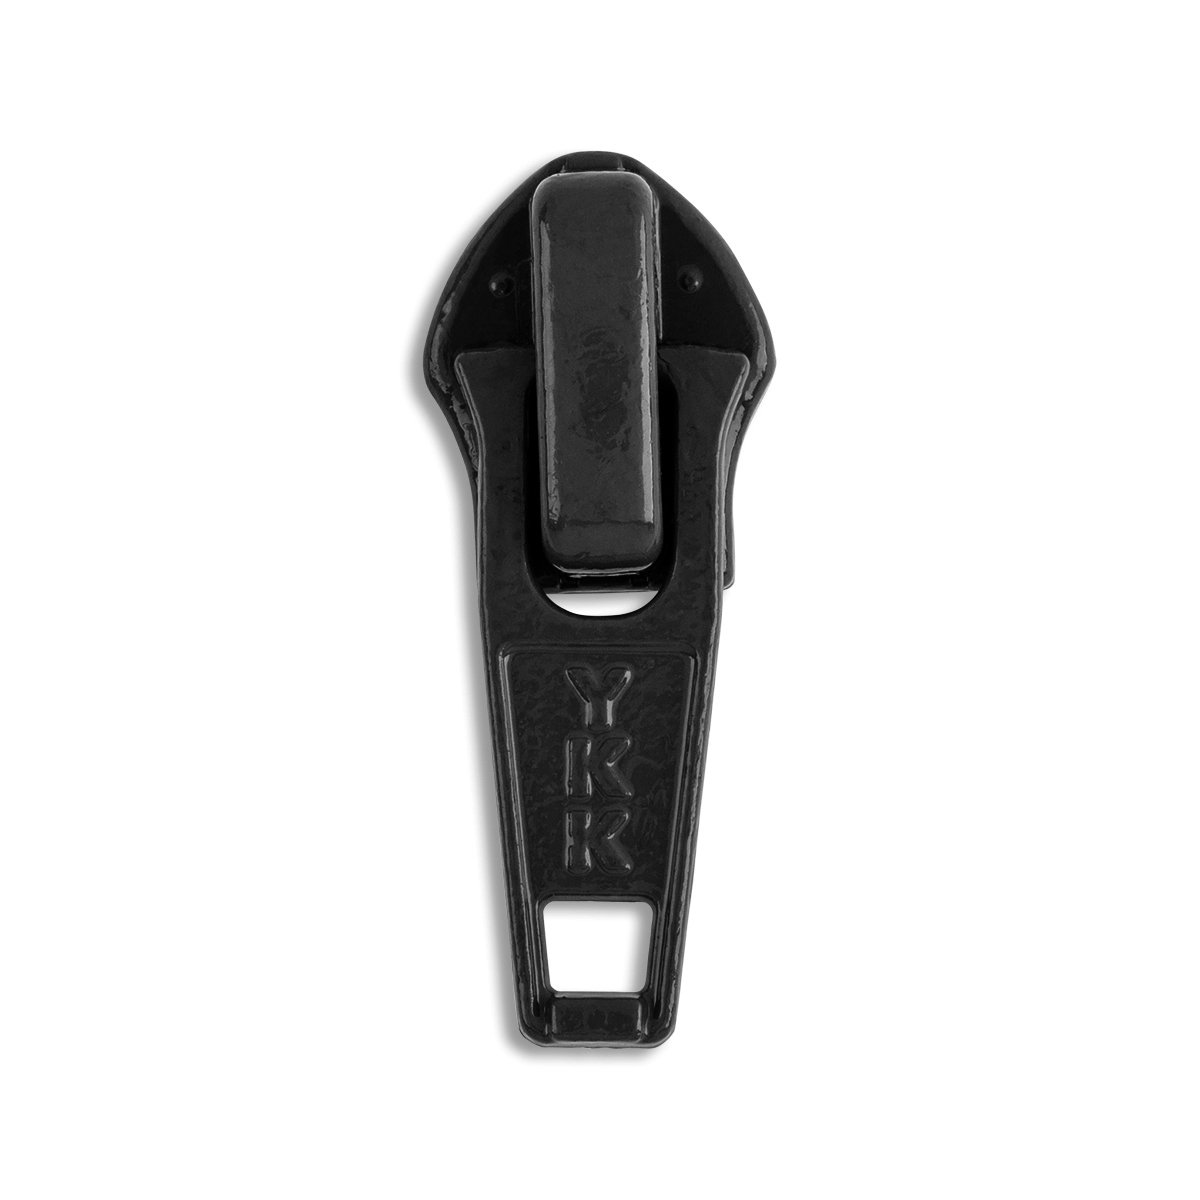 YKK #5 Molded Plastic Two-Way Jacket Bottom Slide Zipper Sliders - 10/Pack  - Black (580)